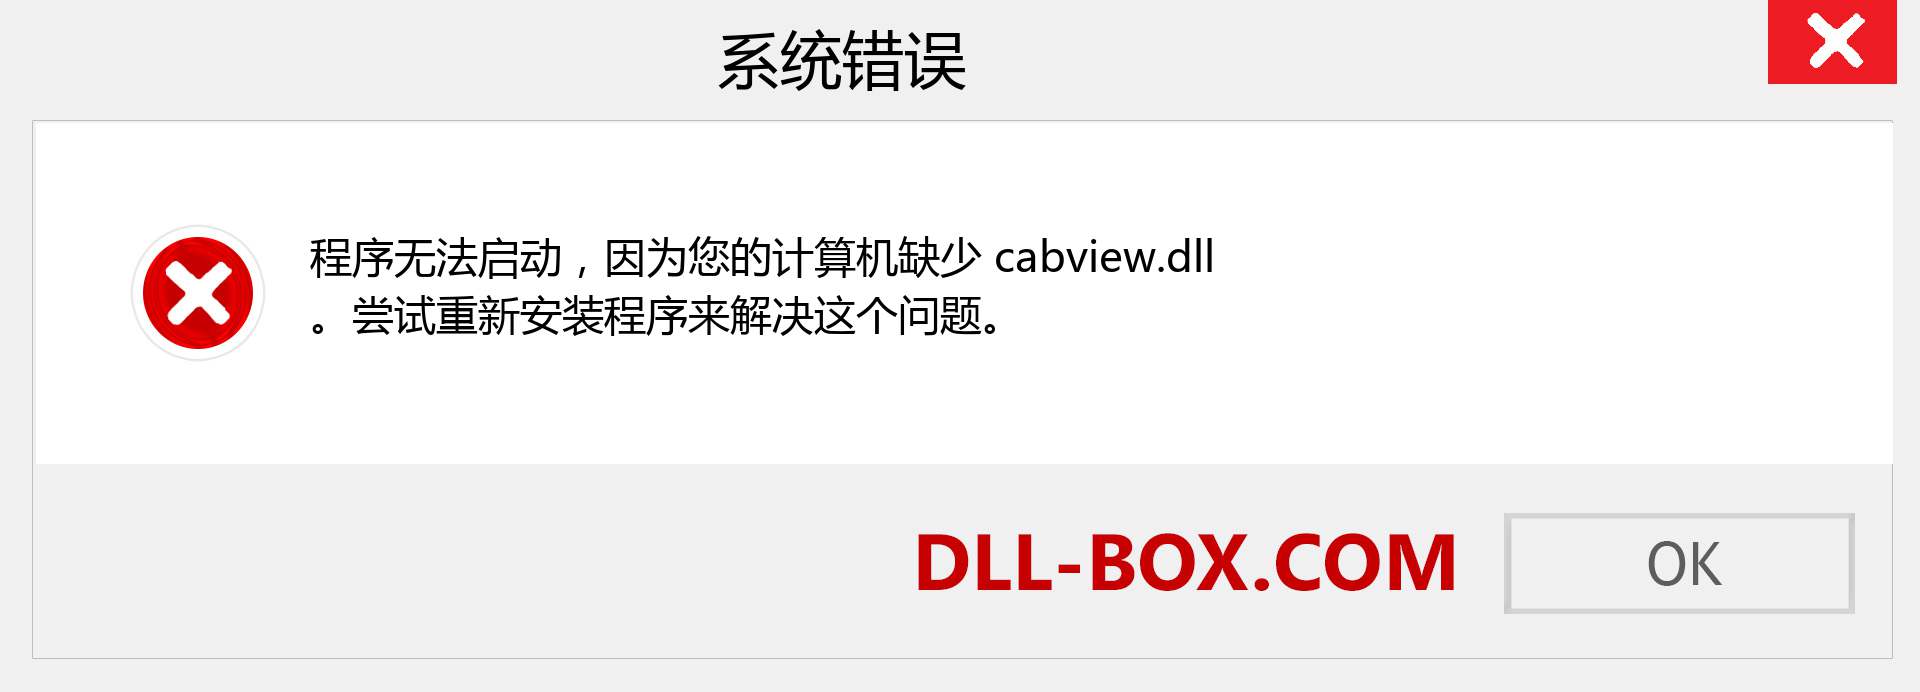 cabview.dll 文件丢失？。 适用于 Windows 7、8、10 的下载 - 修复 Windows、照片、图像上的 cabview dll 丢失错误